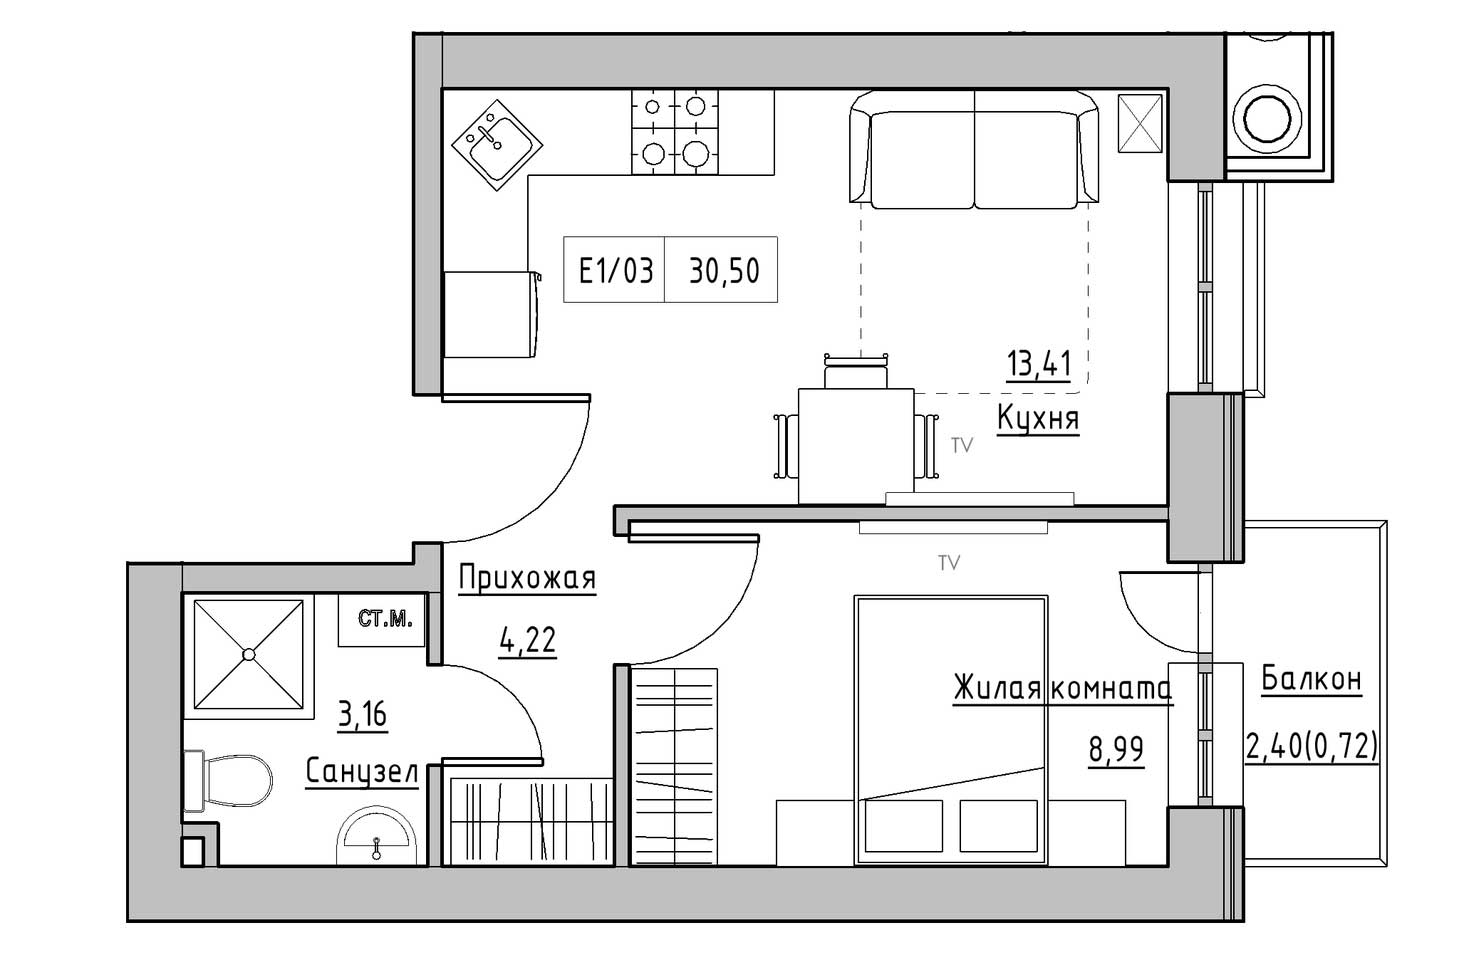 Планування 1-к квартира площею 30.5м2, KS-009-05/0002.